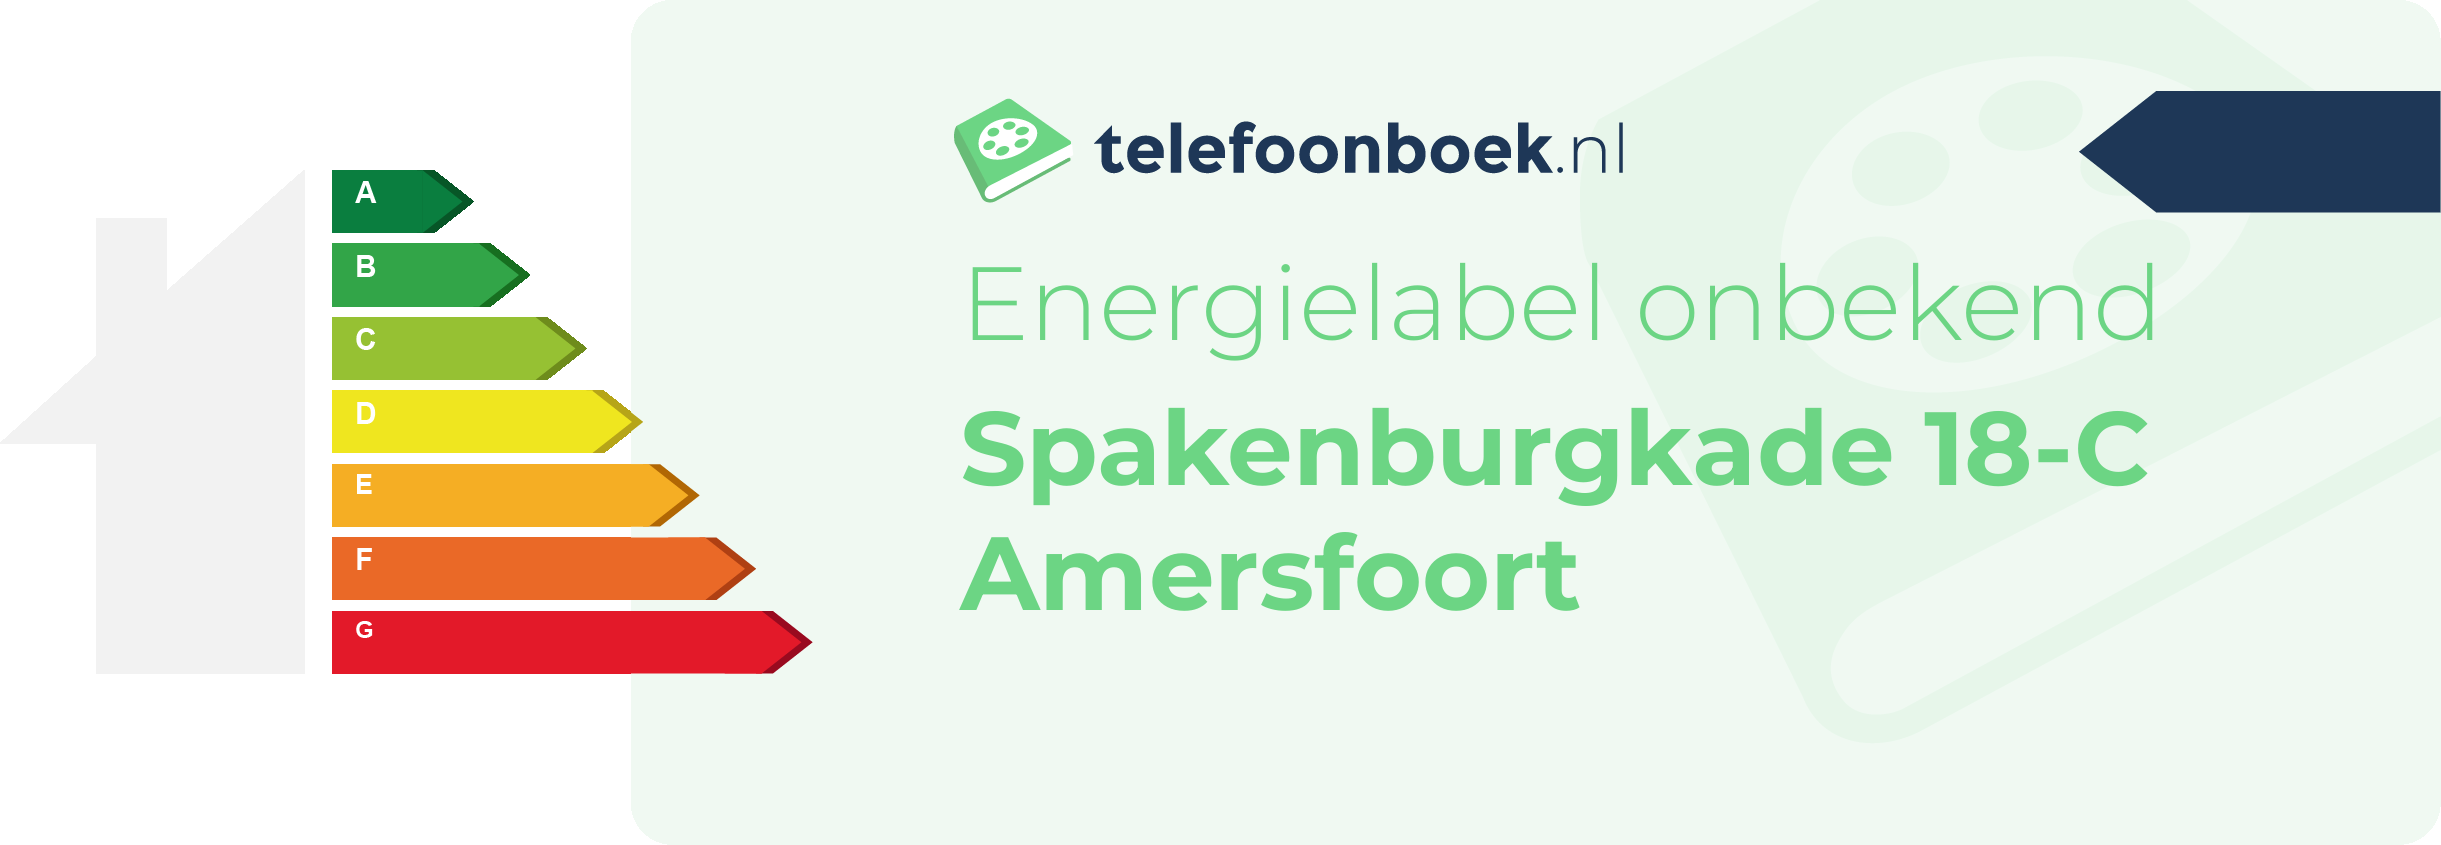 Energielabel Spakenburgkade 18-C Amersfoort